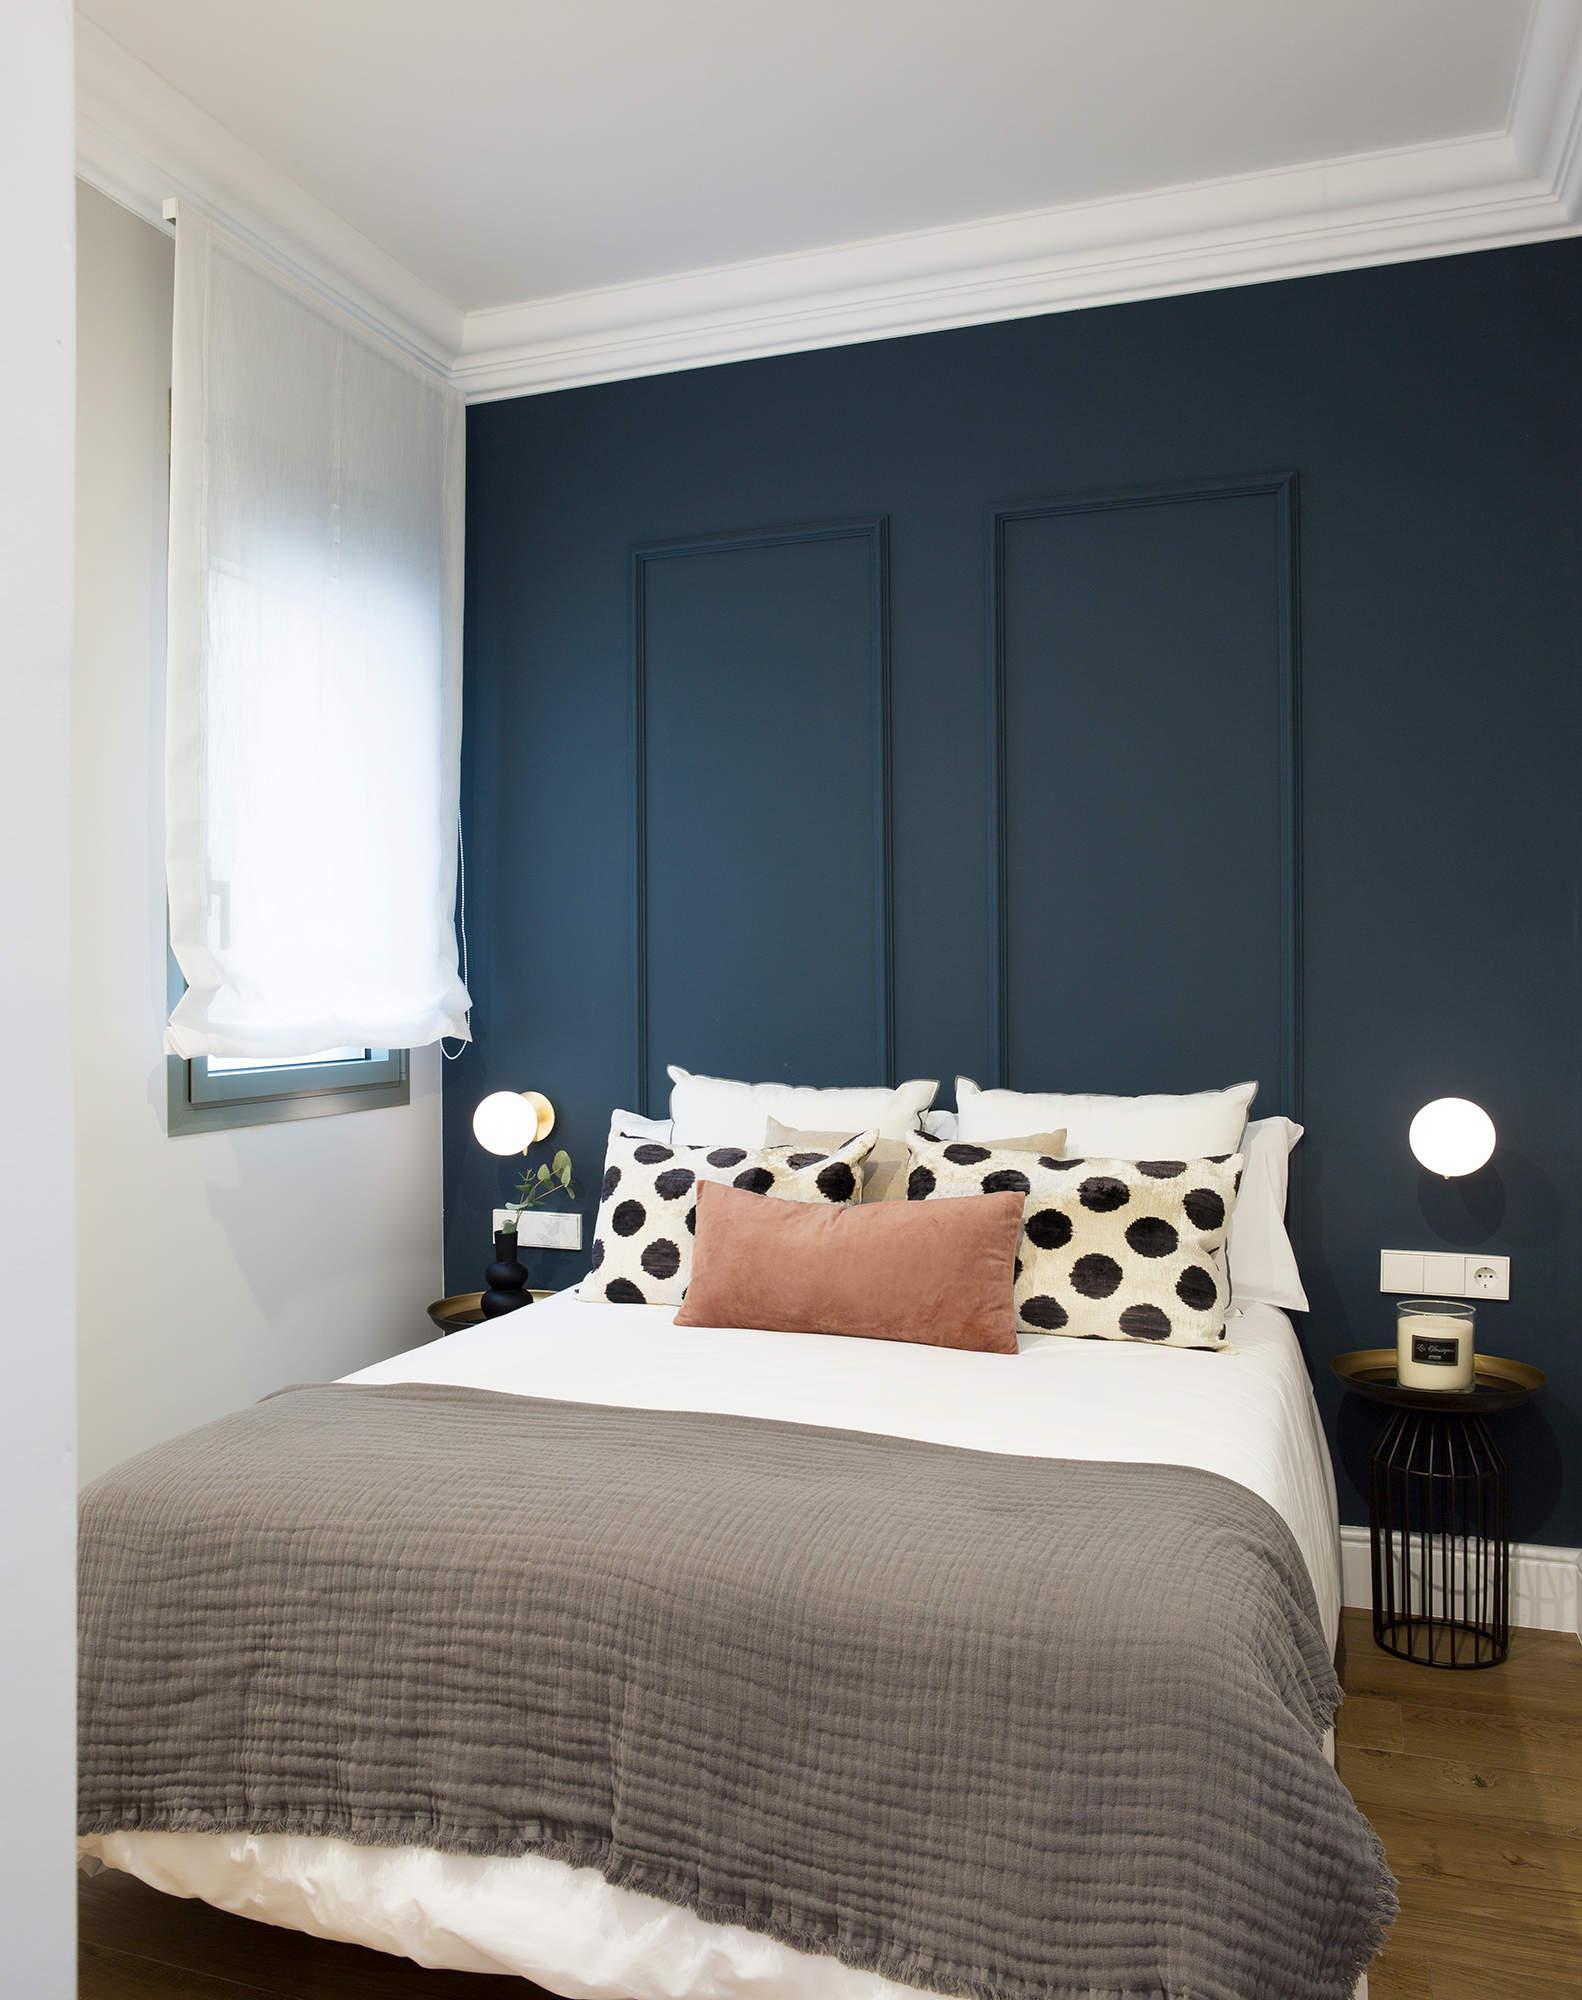 Dormitorio pintado en azul con molduras